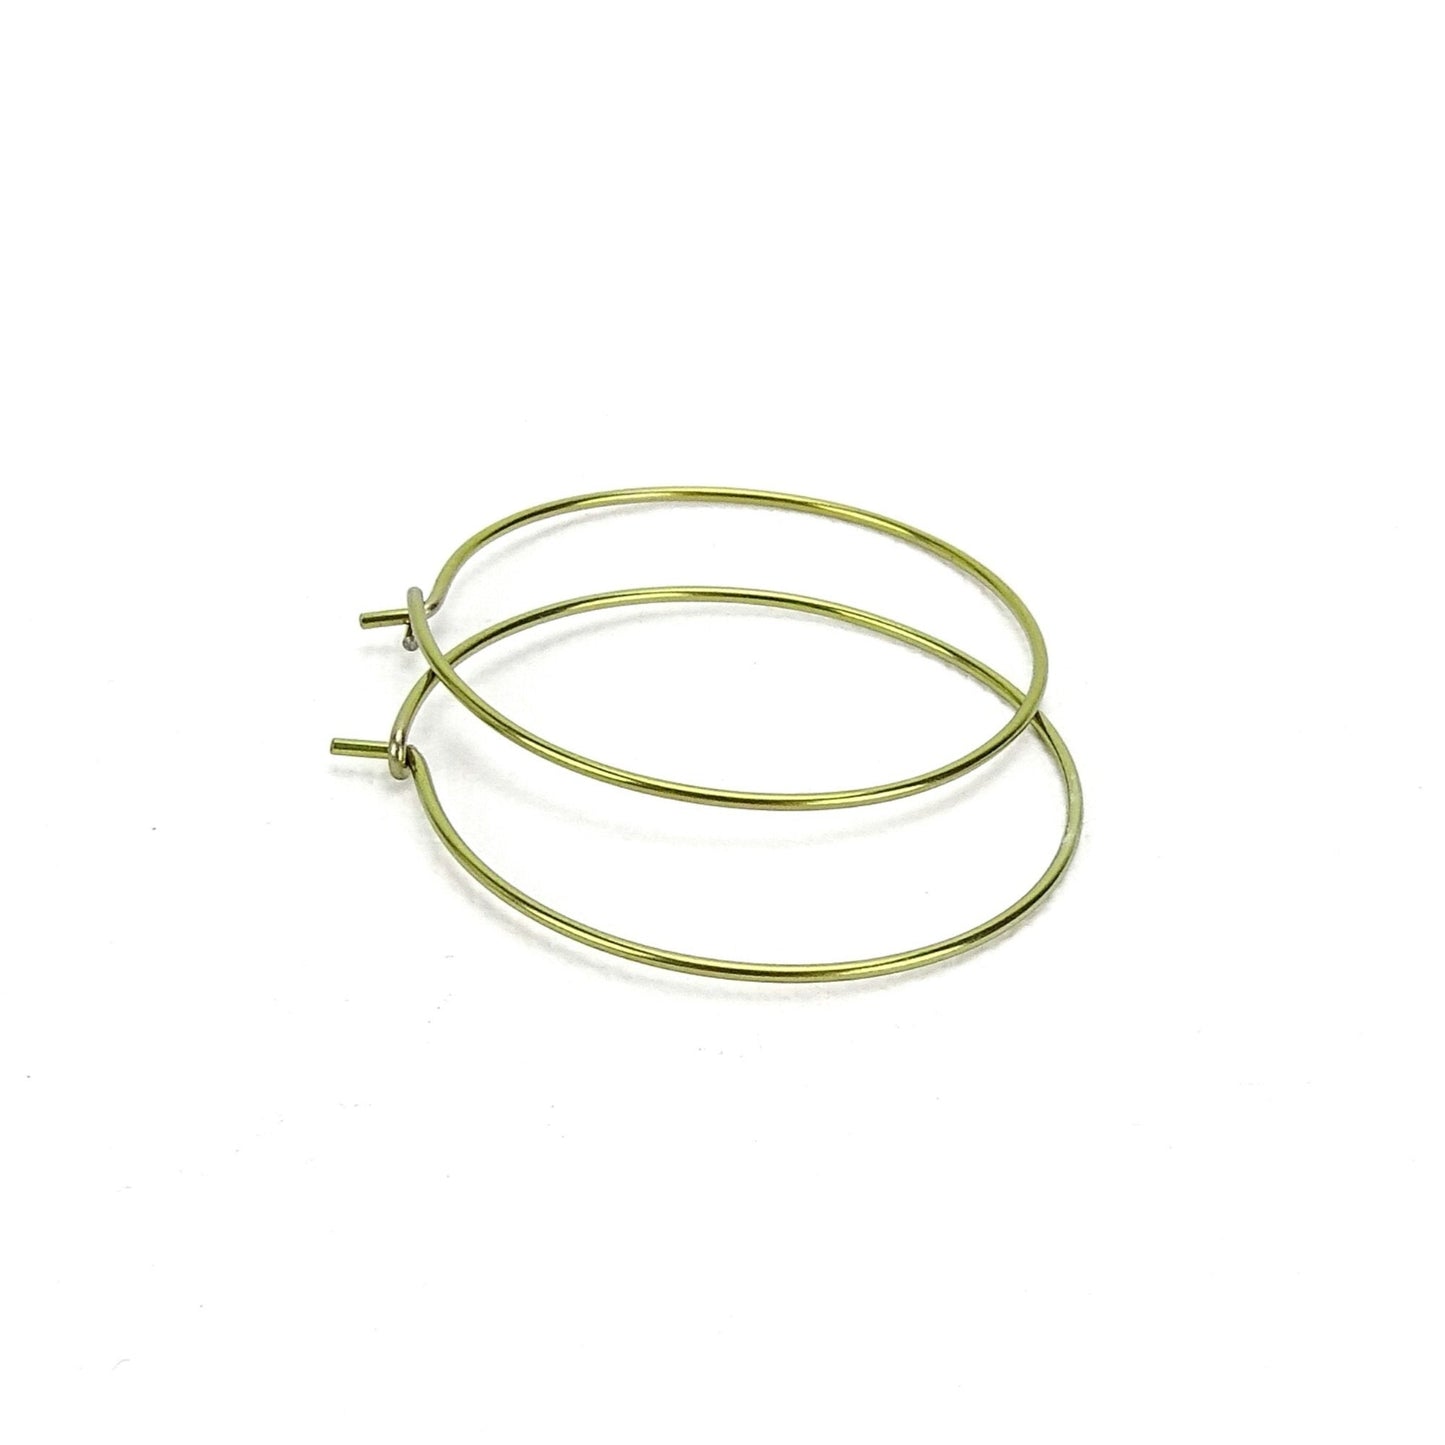 Niobium Hoop Earrings Gold Large, Yellow Gold Color Niobium Hoops for Sensitive Ears, Nickel Free Hypoallergenic Jewelry, Niobium Earrings